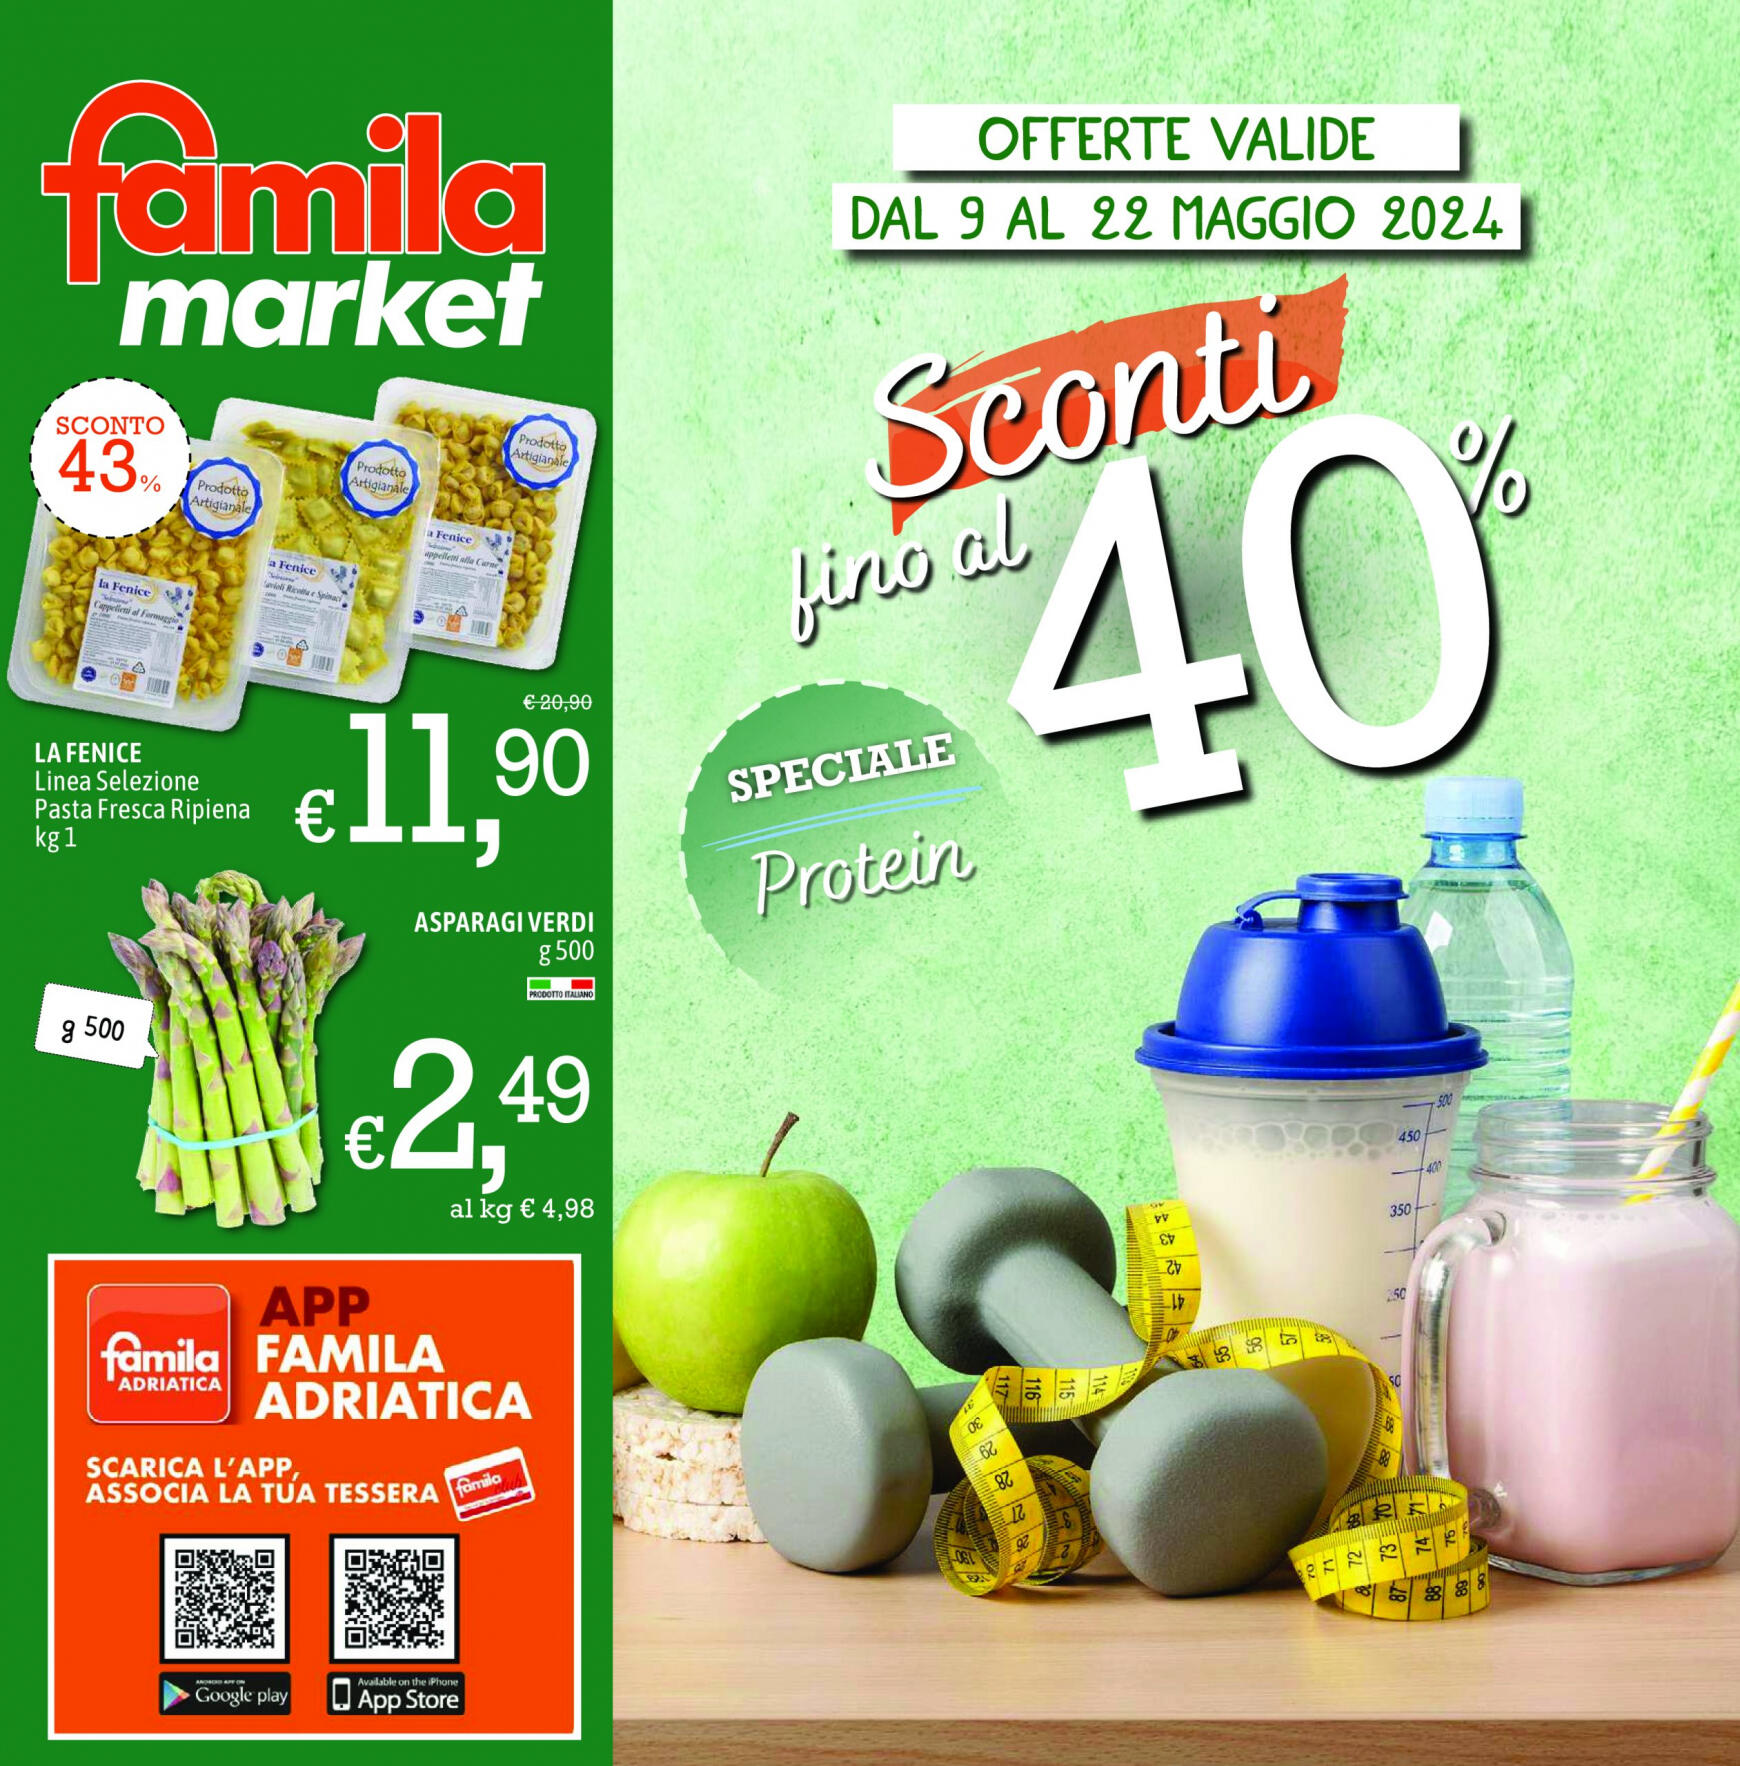 famila - Nuovo volantino Famila market 09.05. - 22.05.